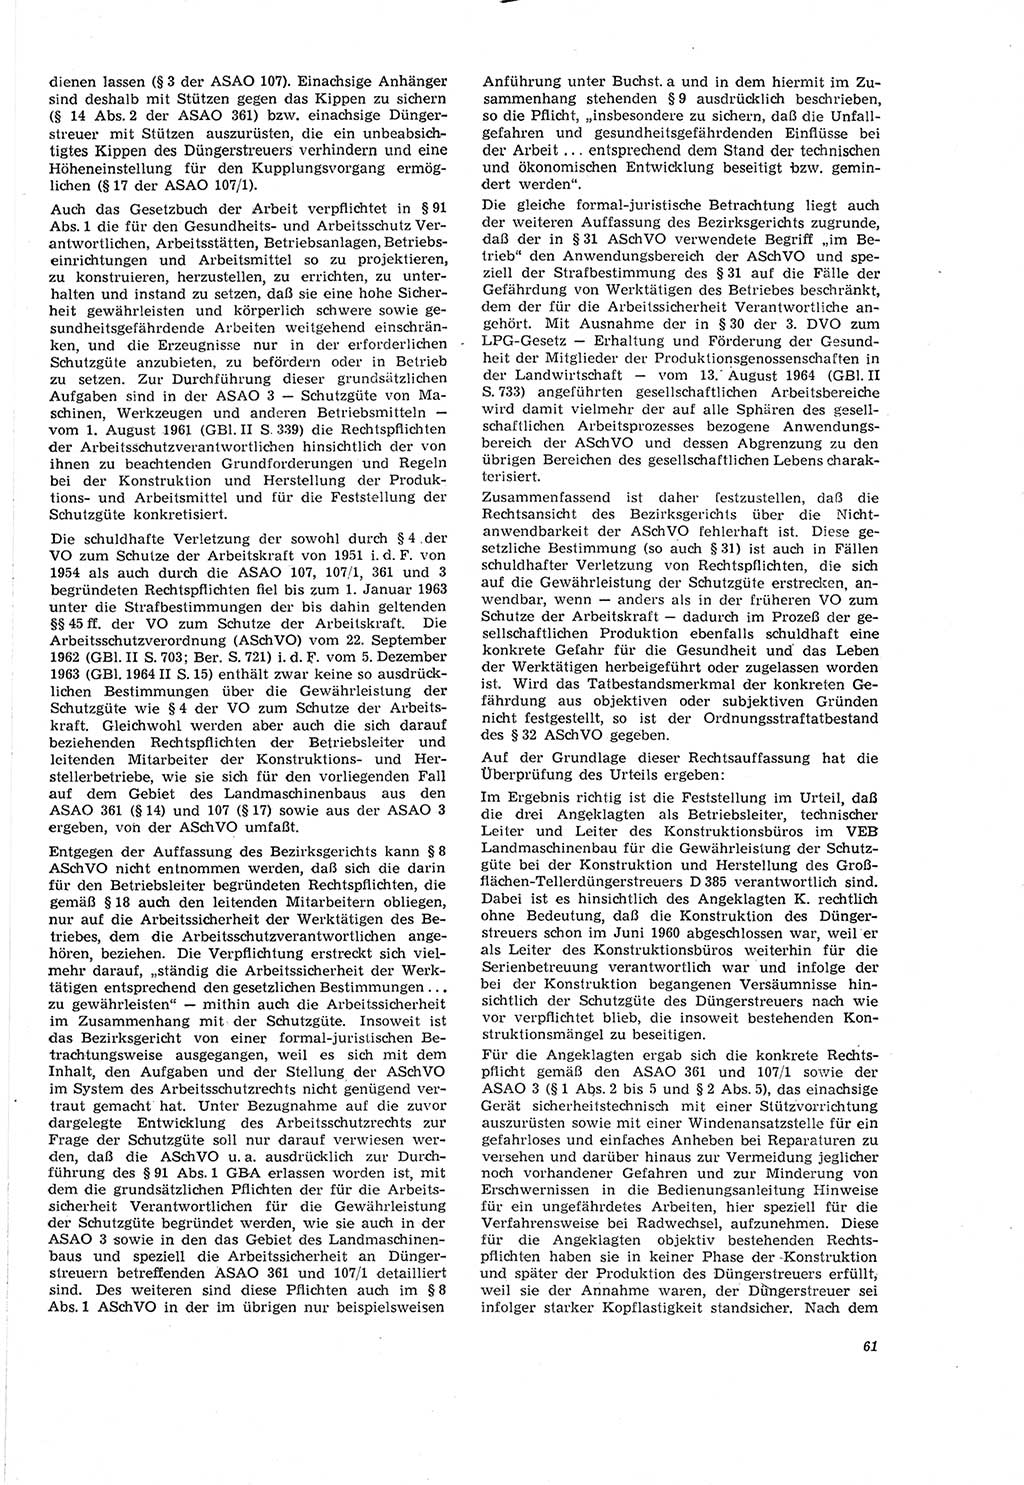 Neue Justiz (NJ), Zeitschrift für Recht und Rechtswissenschaft [Deutsche Demokratische Republik (DDR)], 20. Jahrgang 1966, Seite 61 (NJ DDR 1966, S. 61)